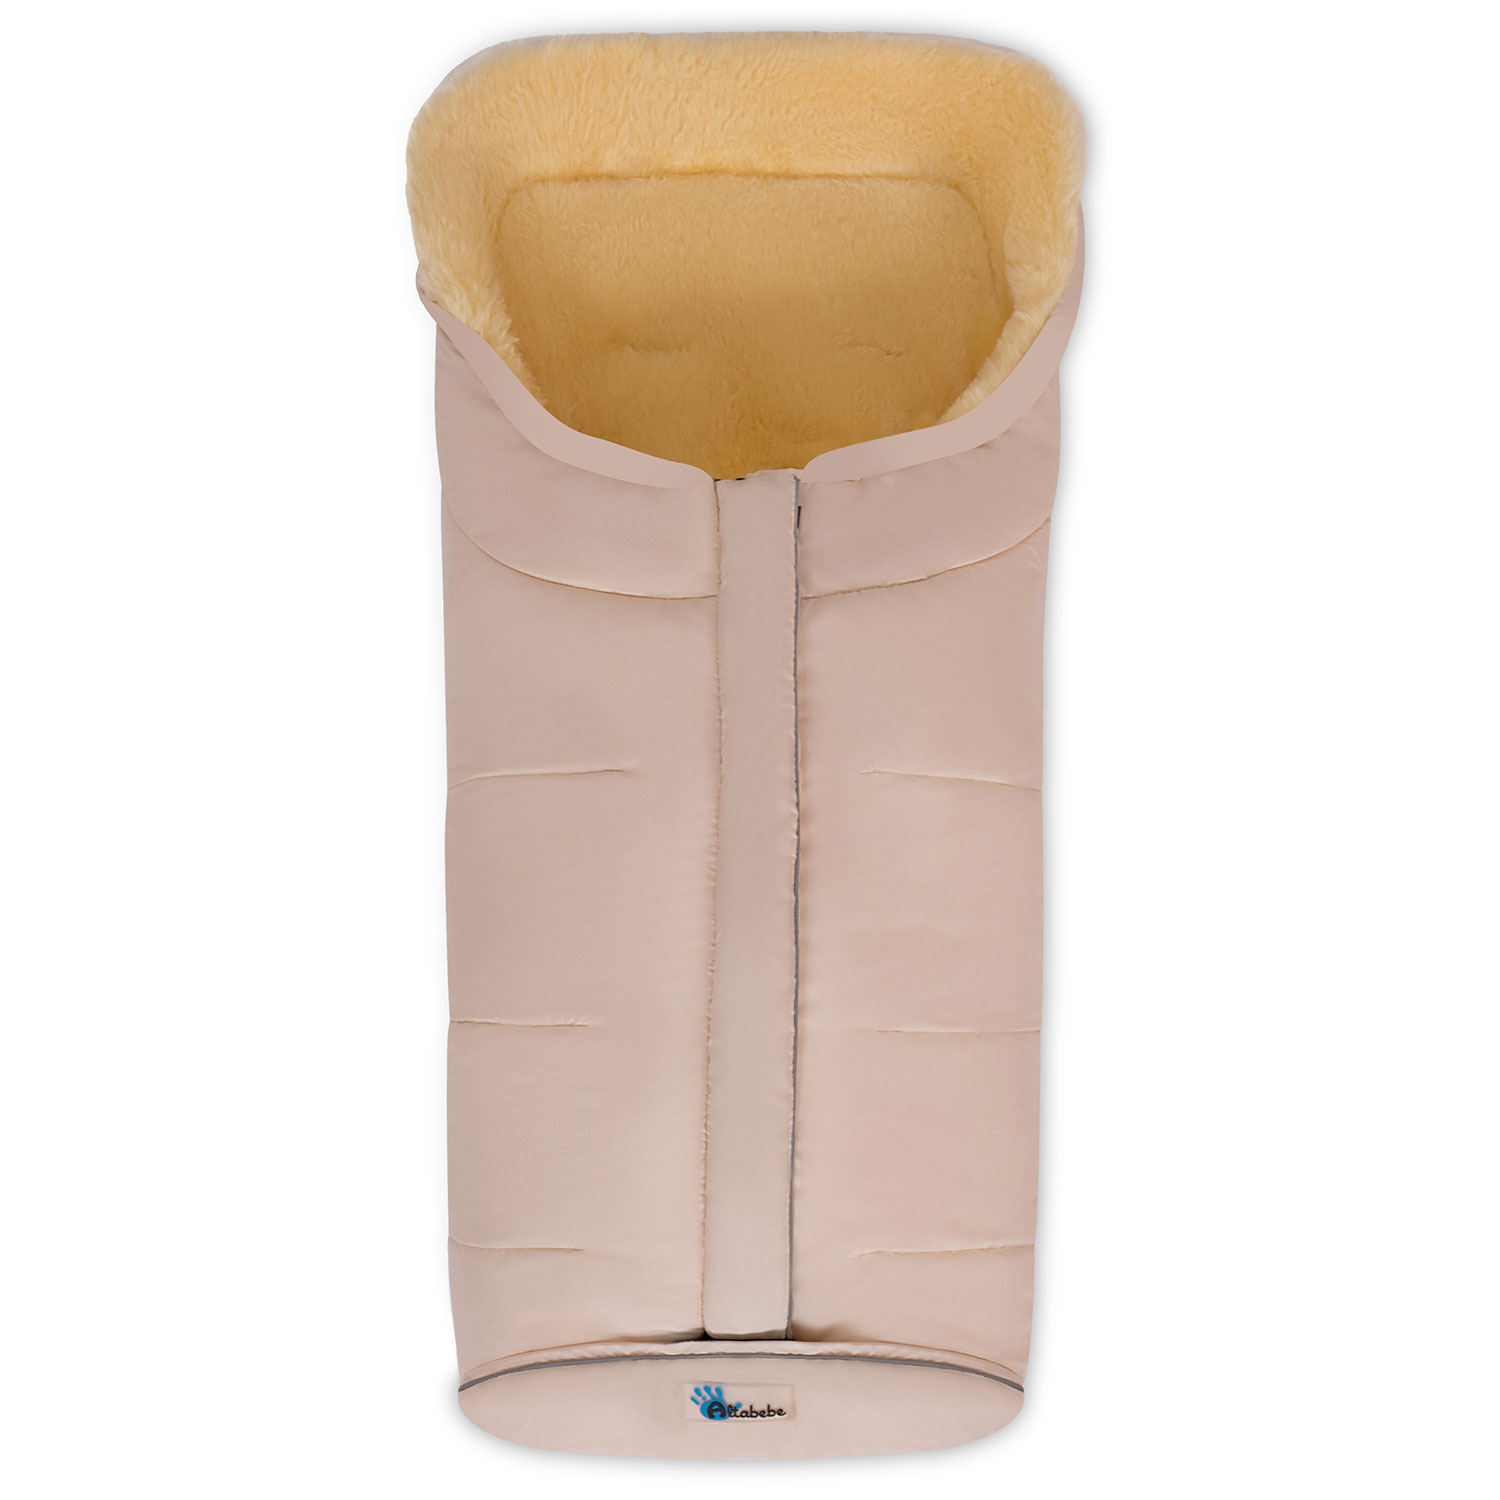 Конверт-мешок для детской коляски Altabebe MT2203LP Lambskin-Classic Footmuff Beige спальный конверт umbo спальный мешок для малыша легкий муслиновый мешок для ножек 4х слойный